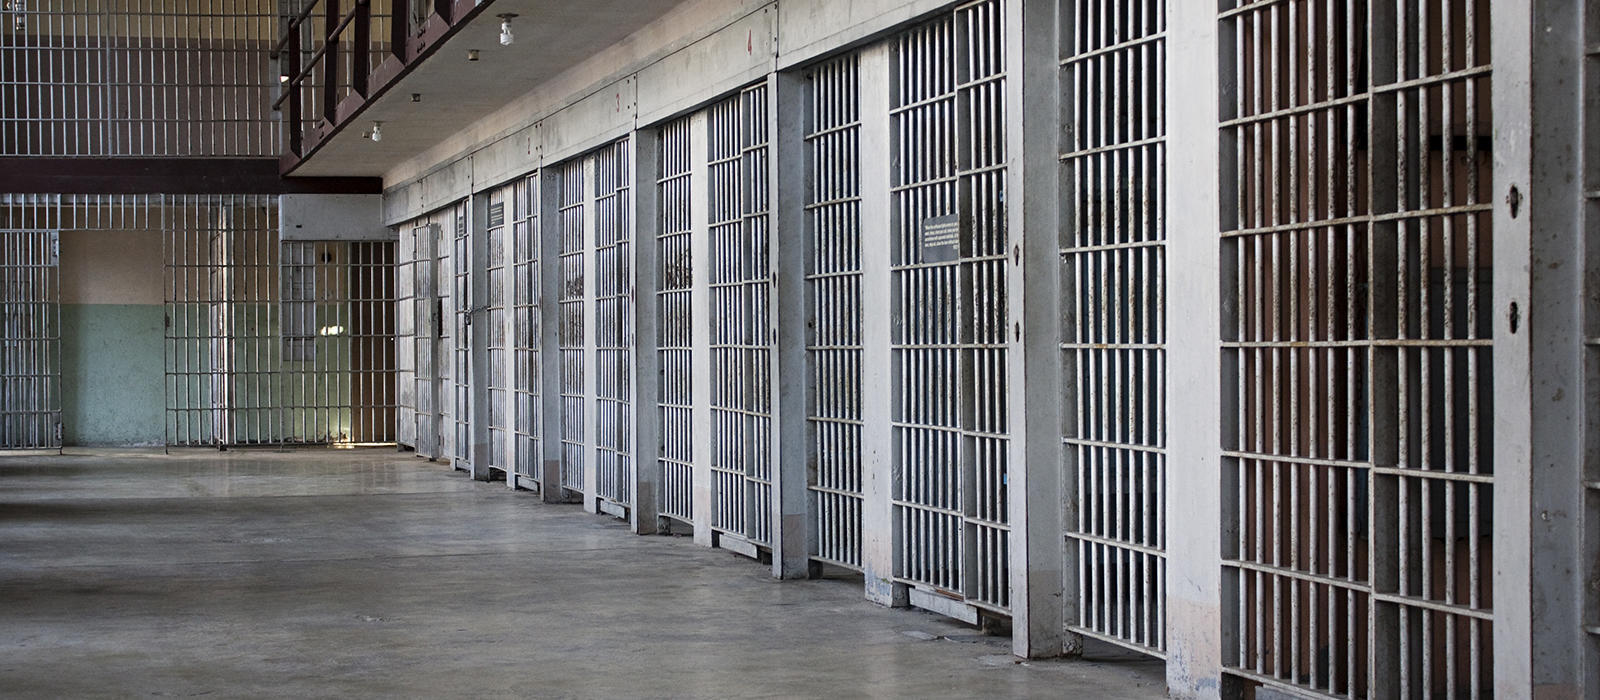 Νέο περιστατικό βίας στις φυλακές Τρικάλων – Κρατούμενος με μαχαίρι κράτησε όμηρο αρχιφύλακα